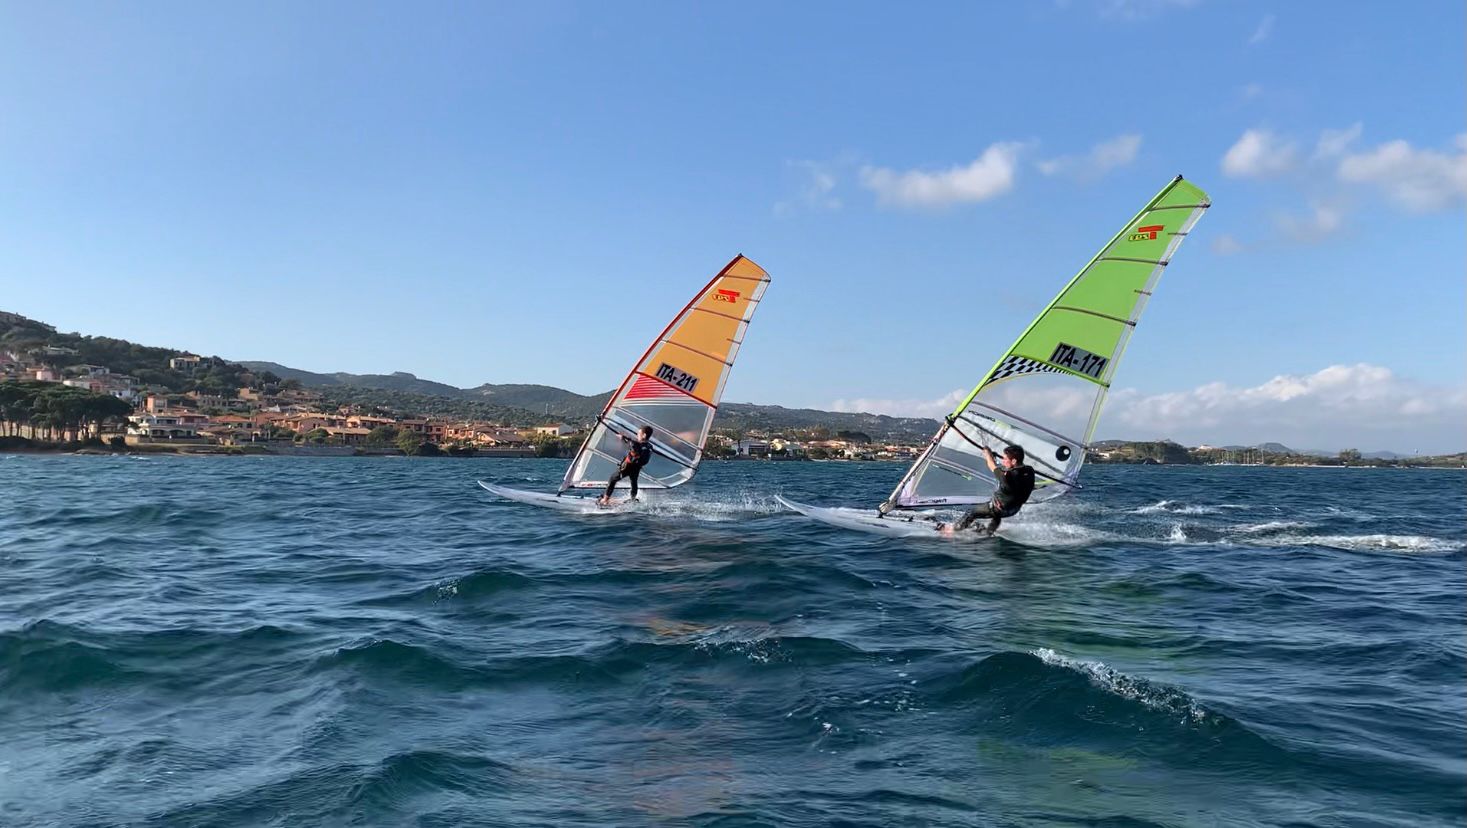 Arzachena, due fine settimana dedicati al windsurf: ecco il programma